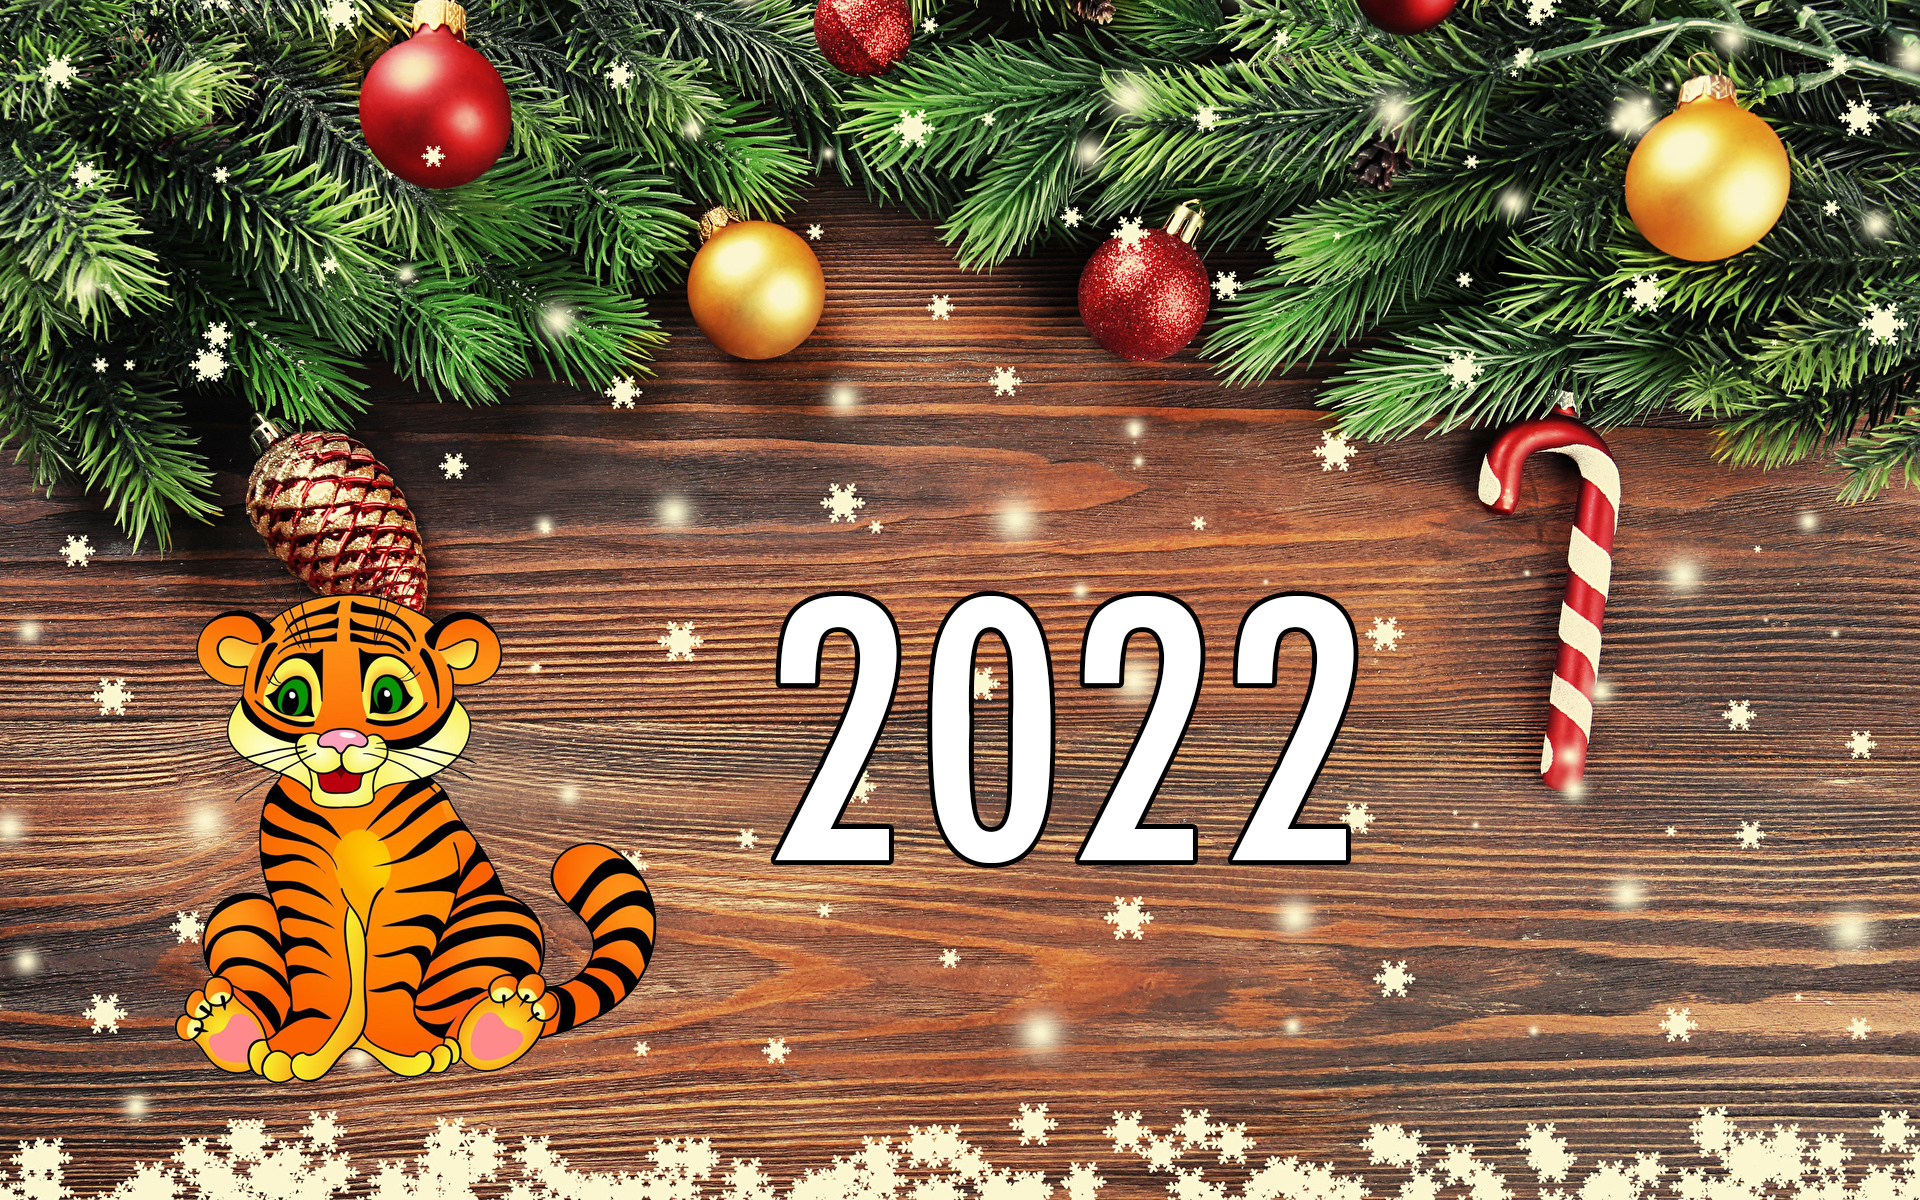 Через Сколько Новый Год 2022